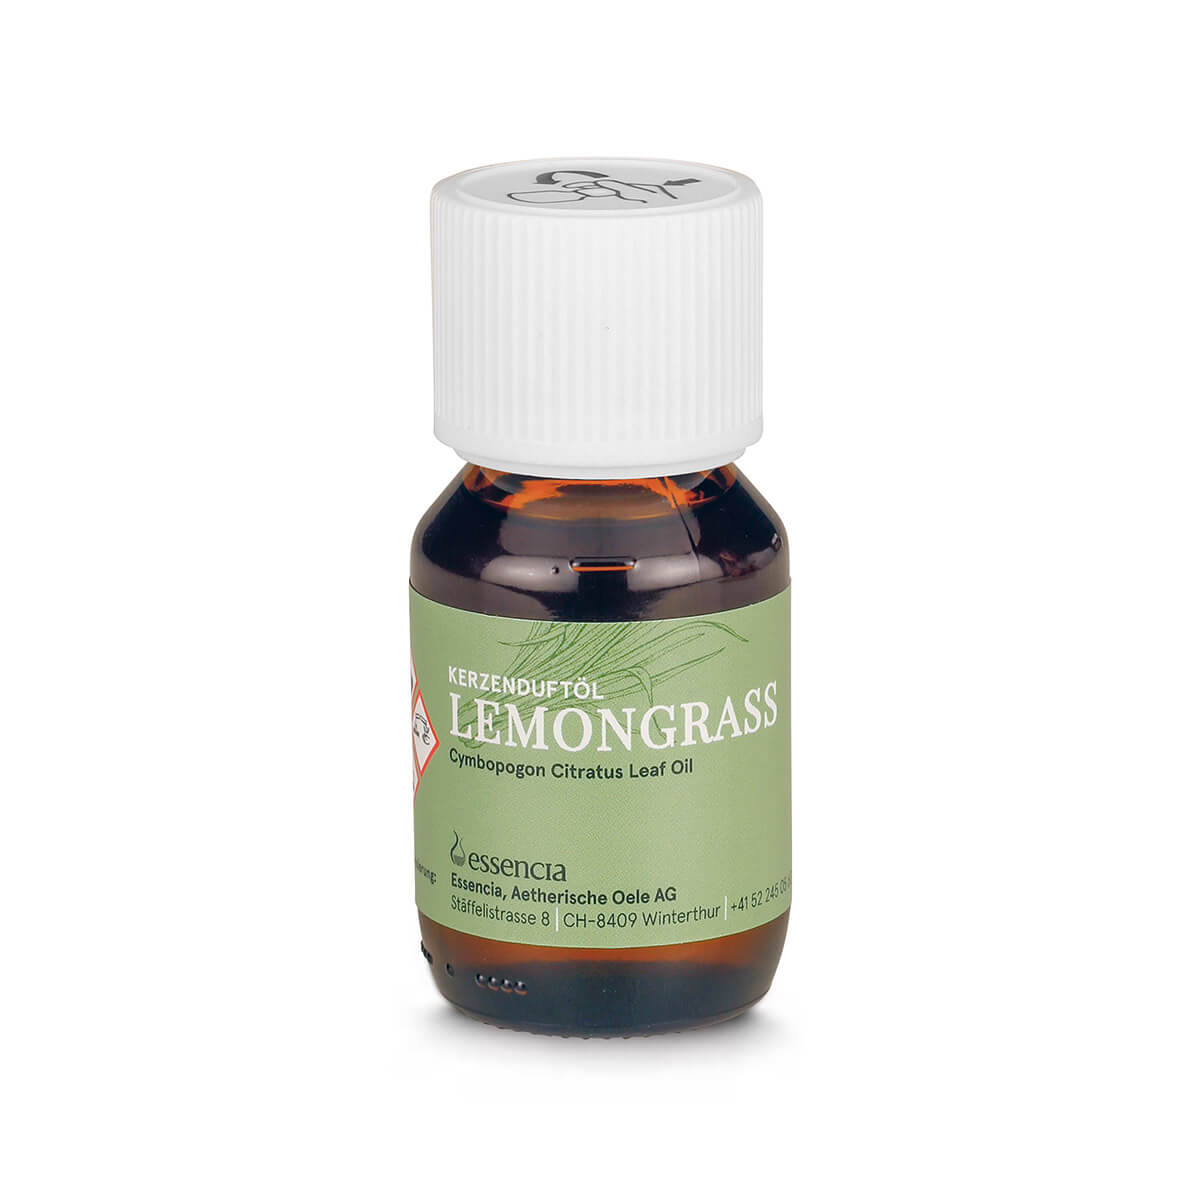 Kerzenduftöl Lemongrass – Fläschchen à 50 ml